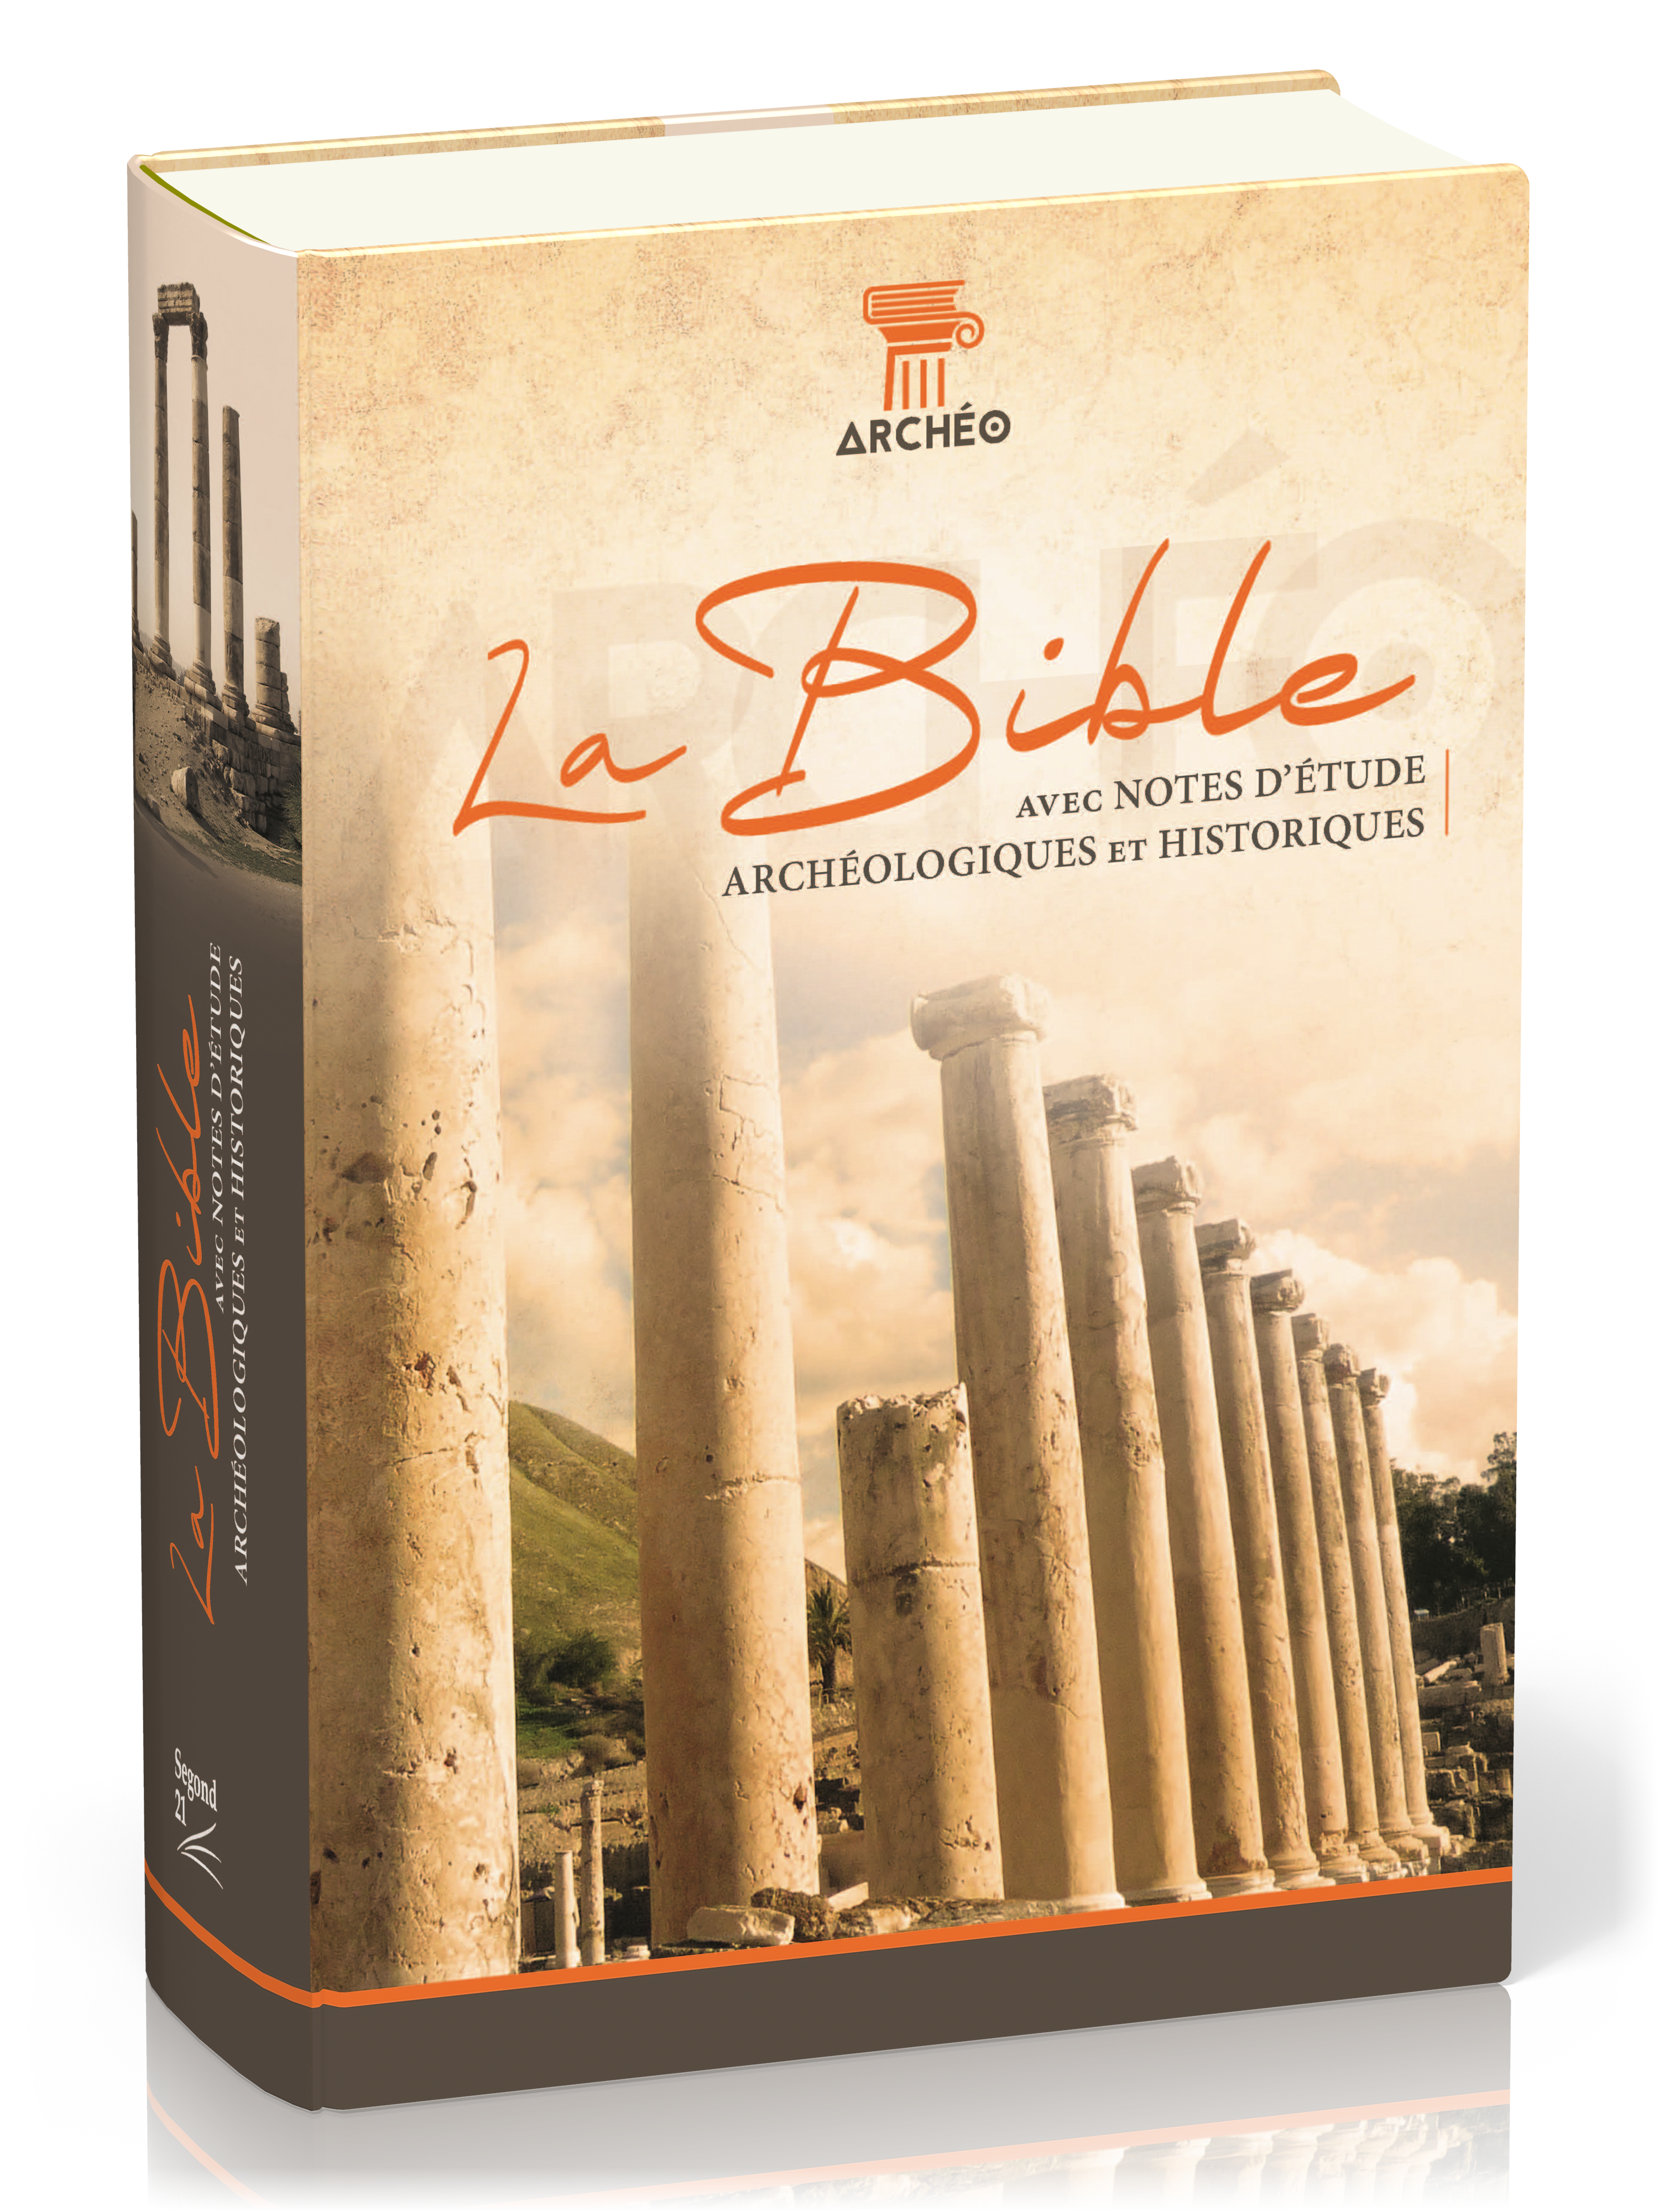 Bible Segond 21 archéologique - couverture rigide